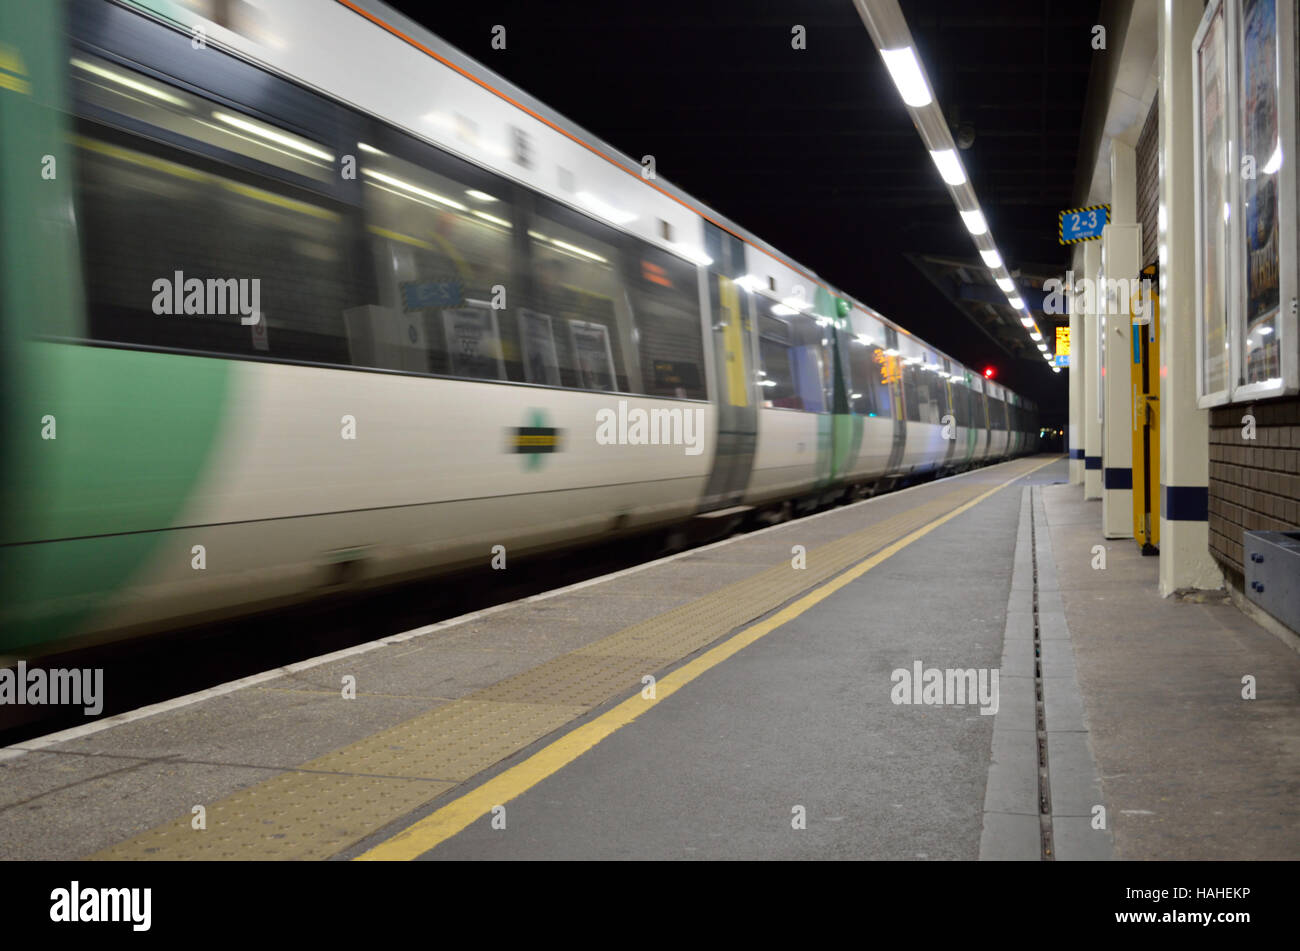 Un train Southern Railway arrivant à la gare de l'aéroport de Gatwick - motion blur, Angleterre, Royaume-Uni Banque D'Images